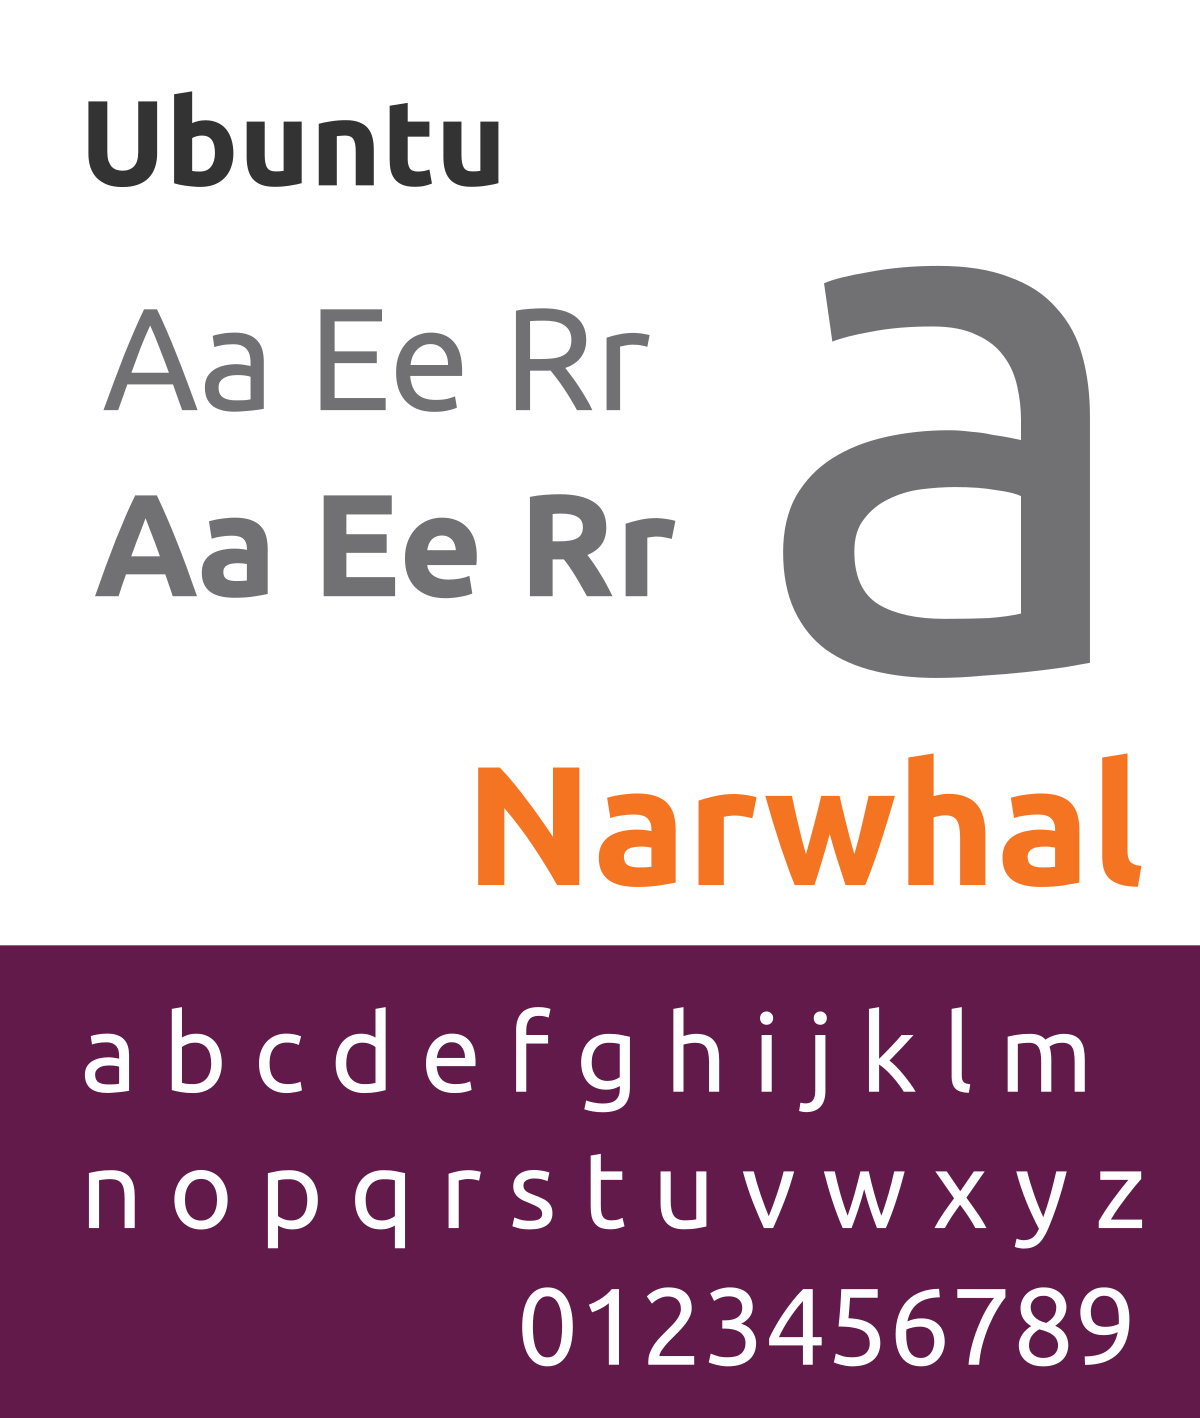 Font Ubuntu: Với Font Ubuntu chính thức được cập nhật, đó là một bước ngoặt lớn trong quá trình phát triển Ubuntu. Với một thiết kế modern và đa dạng, font Ubuntu có thể được sử dụng trên các thiết bị từ điện thoại cho đến máy tính để bàn, giúp cho mã của bạn trở nên quyến rũ, độc đáo hơn và dễ đọc hơn. Chắc chắn bạn sẽ yêu thích font Ubuntu đầy cá tính này.